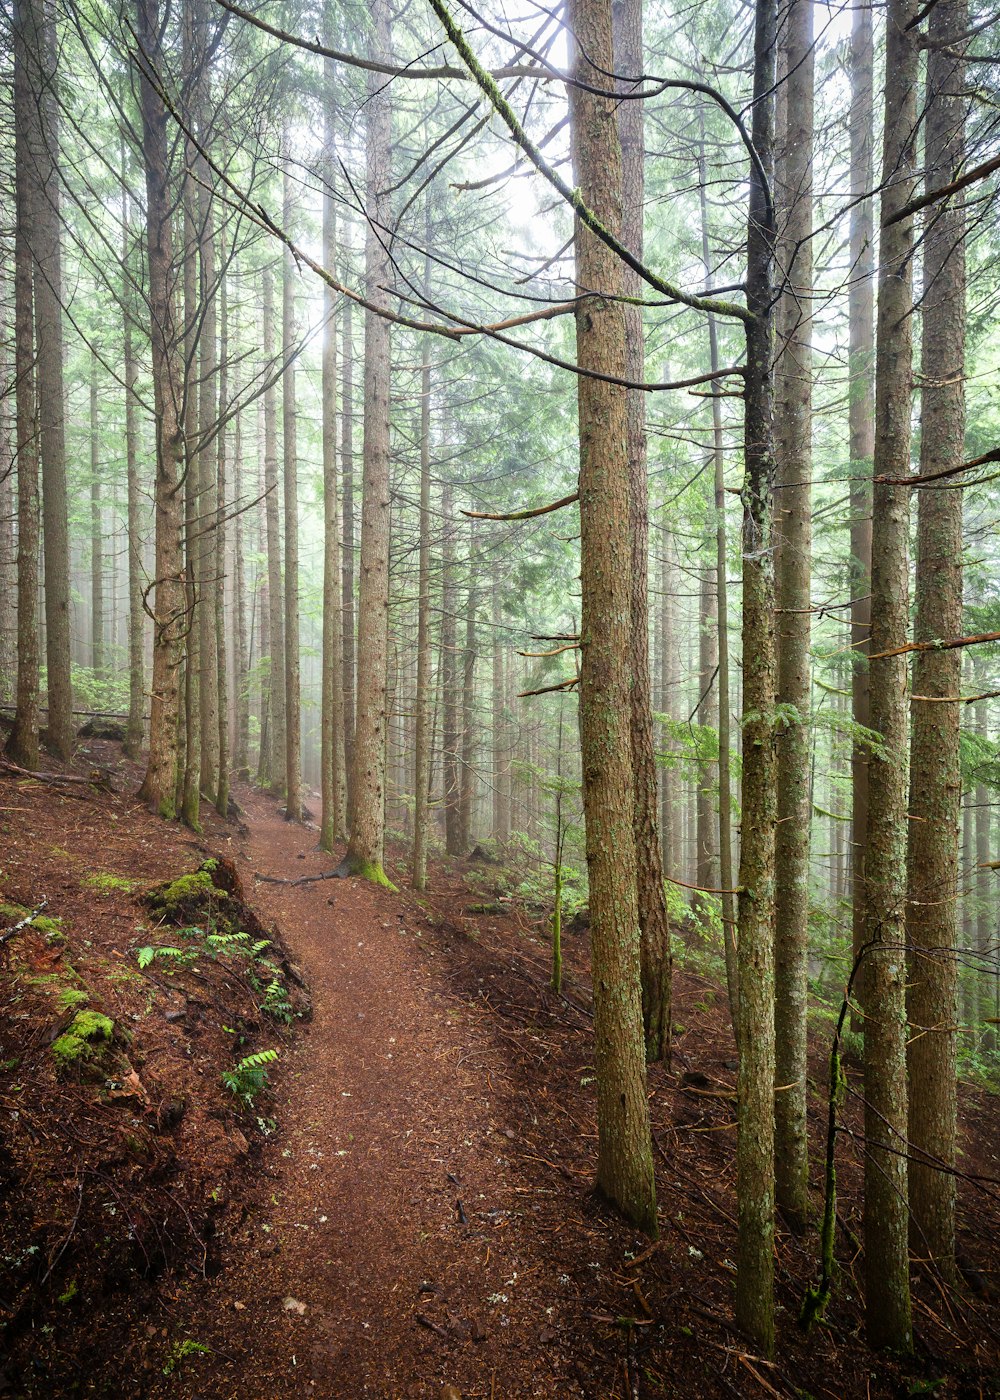 Un sendero en medio de un bosque con muchos árboles